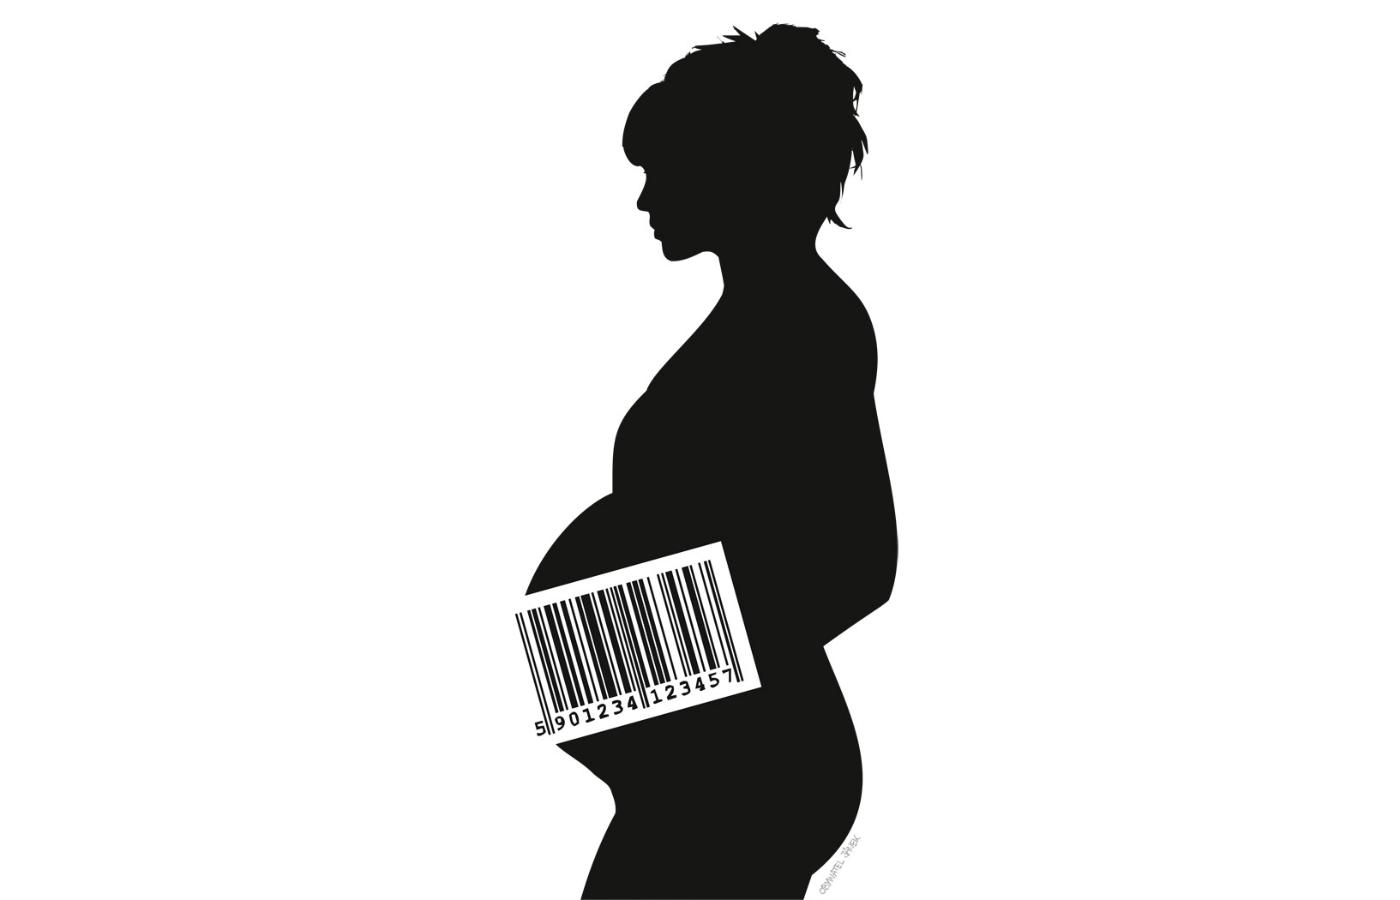 Lista medycznych danych gromadzonych na nasz temat rozszerzy się o informację o ciąży.